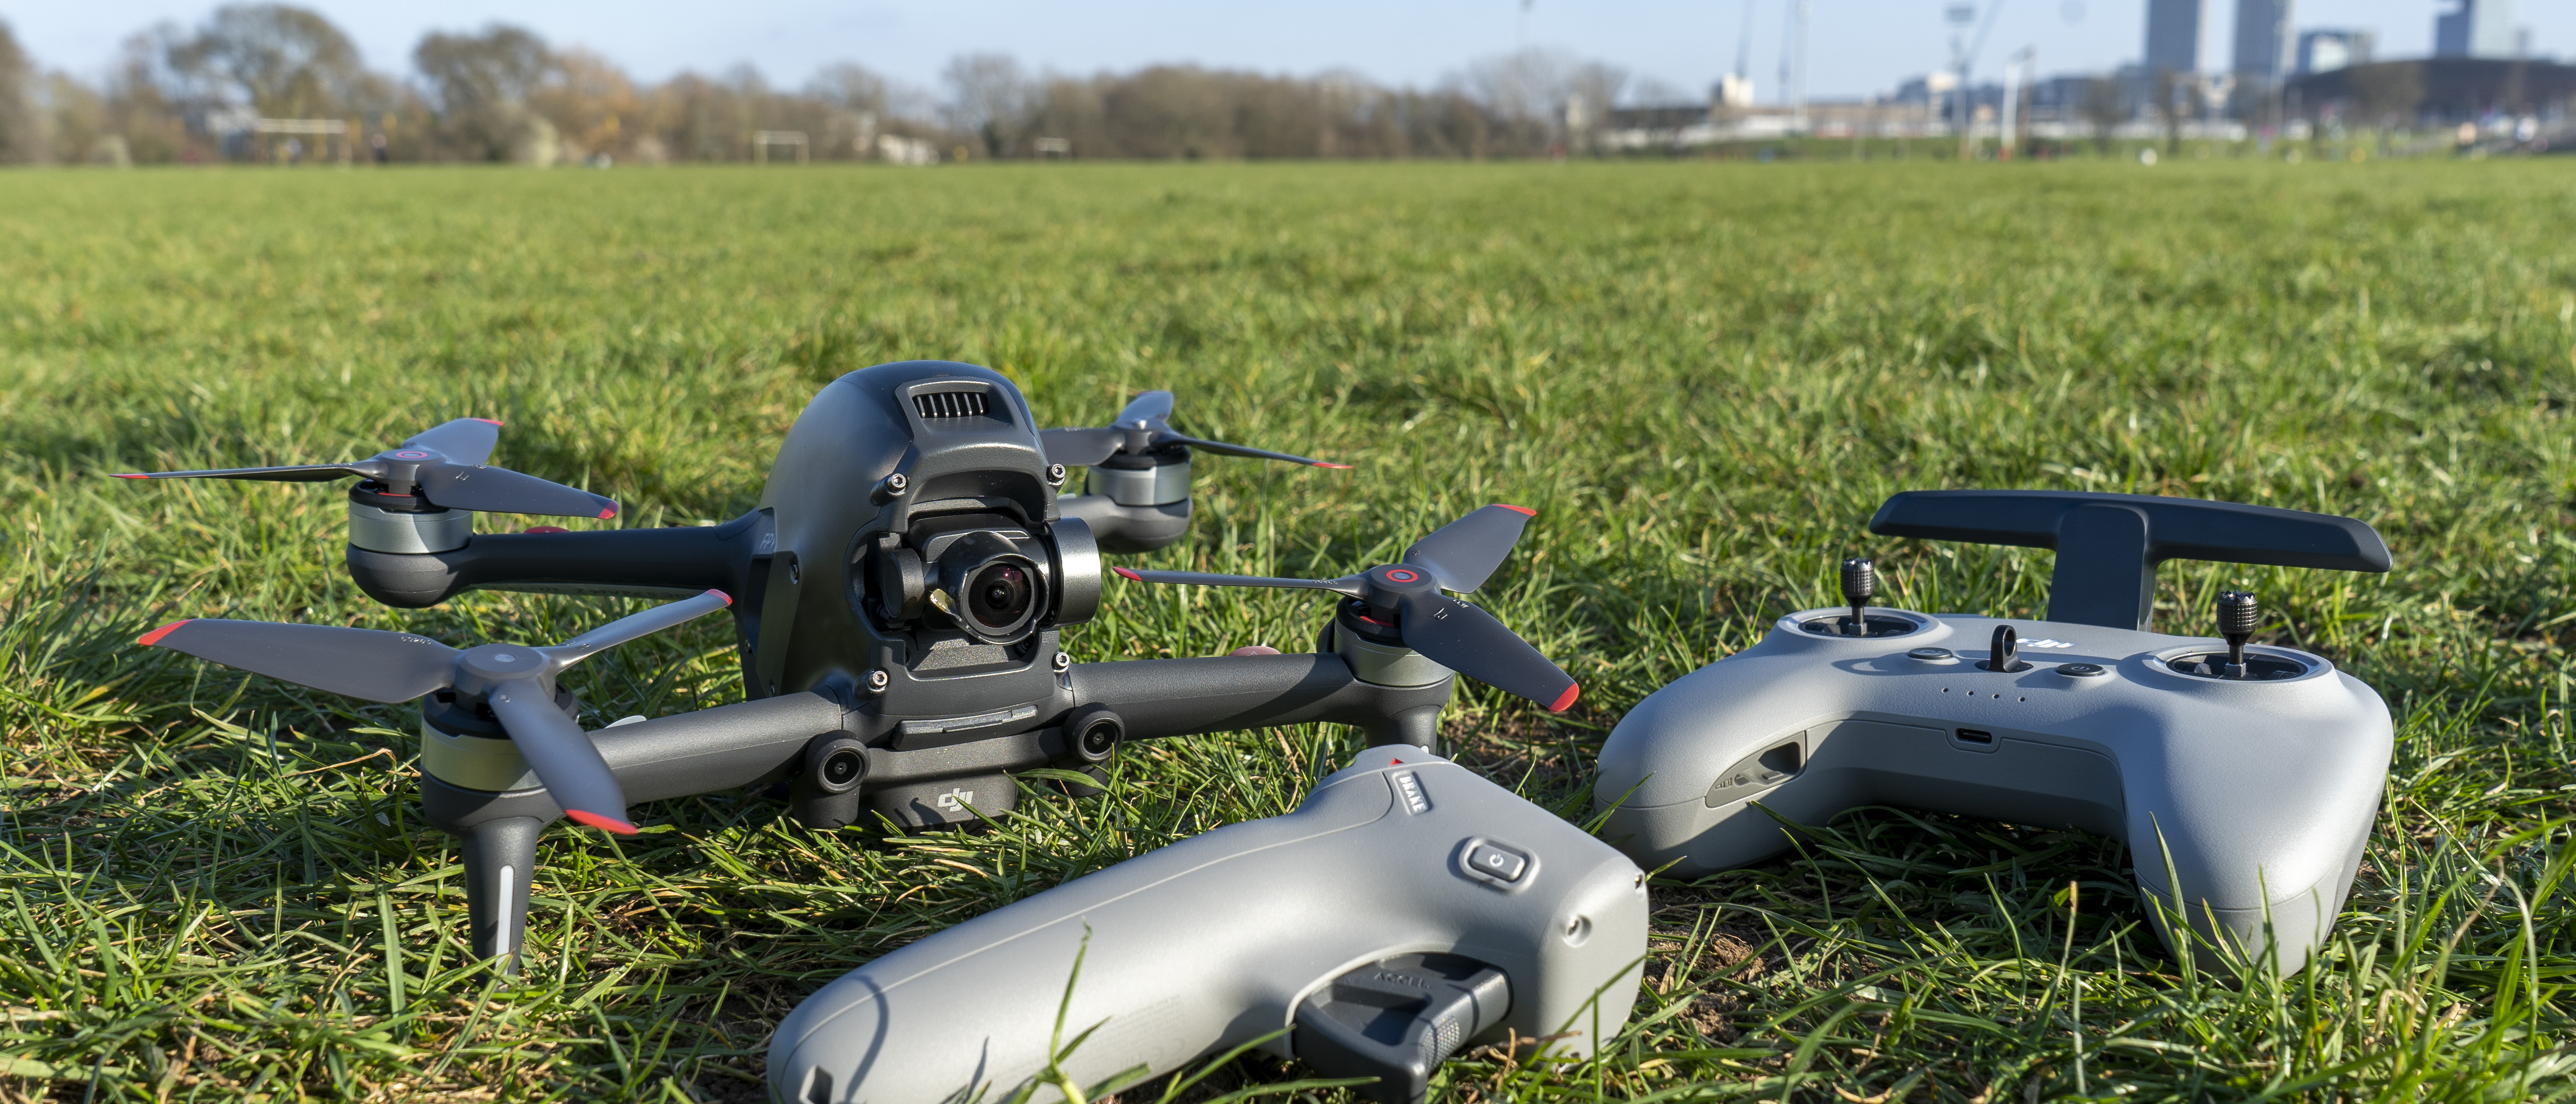 DJI FPV drone review